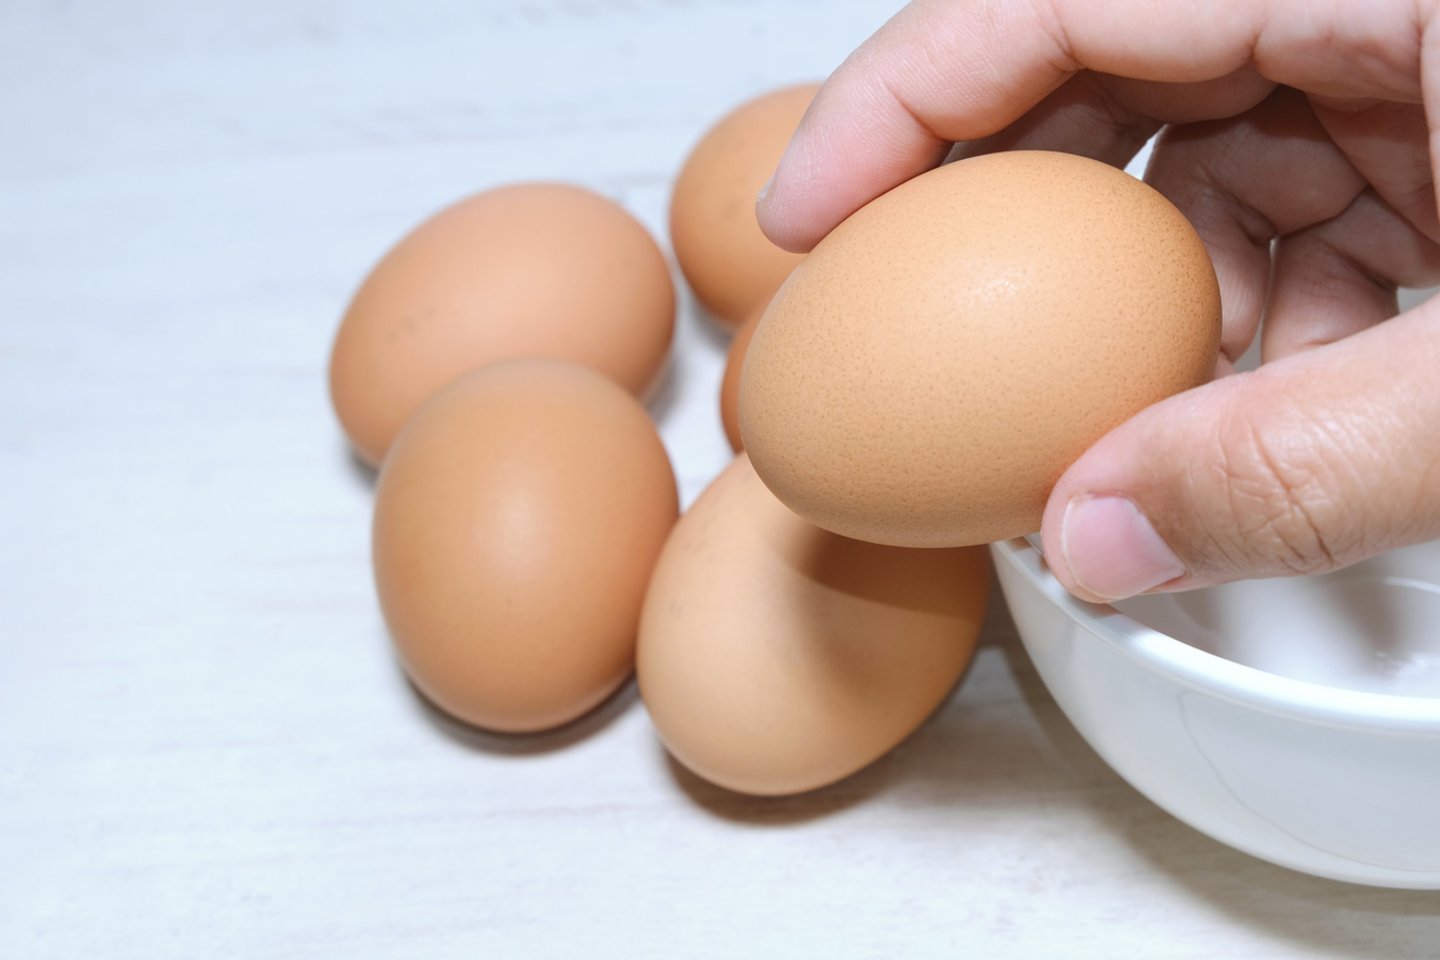 Maistine verte kiaušiniai yra itin vertingas produktas, kurį tiesiog būtina įtraukti į kasdienį mitybos racioną.<br>123rf nuotr.